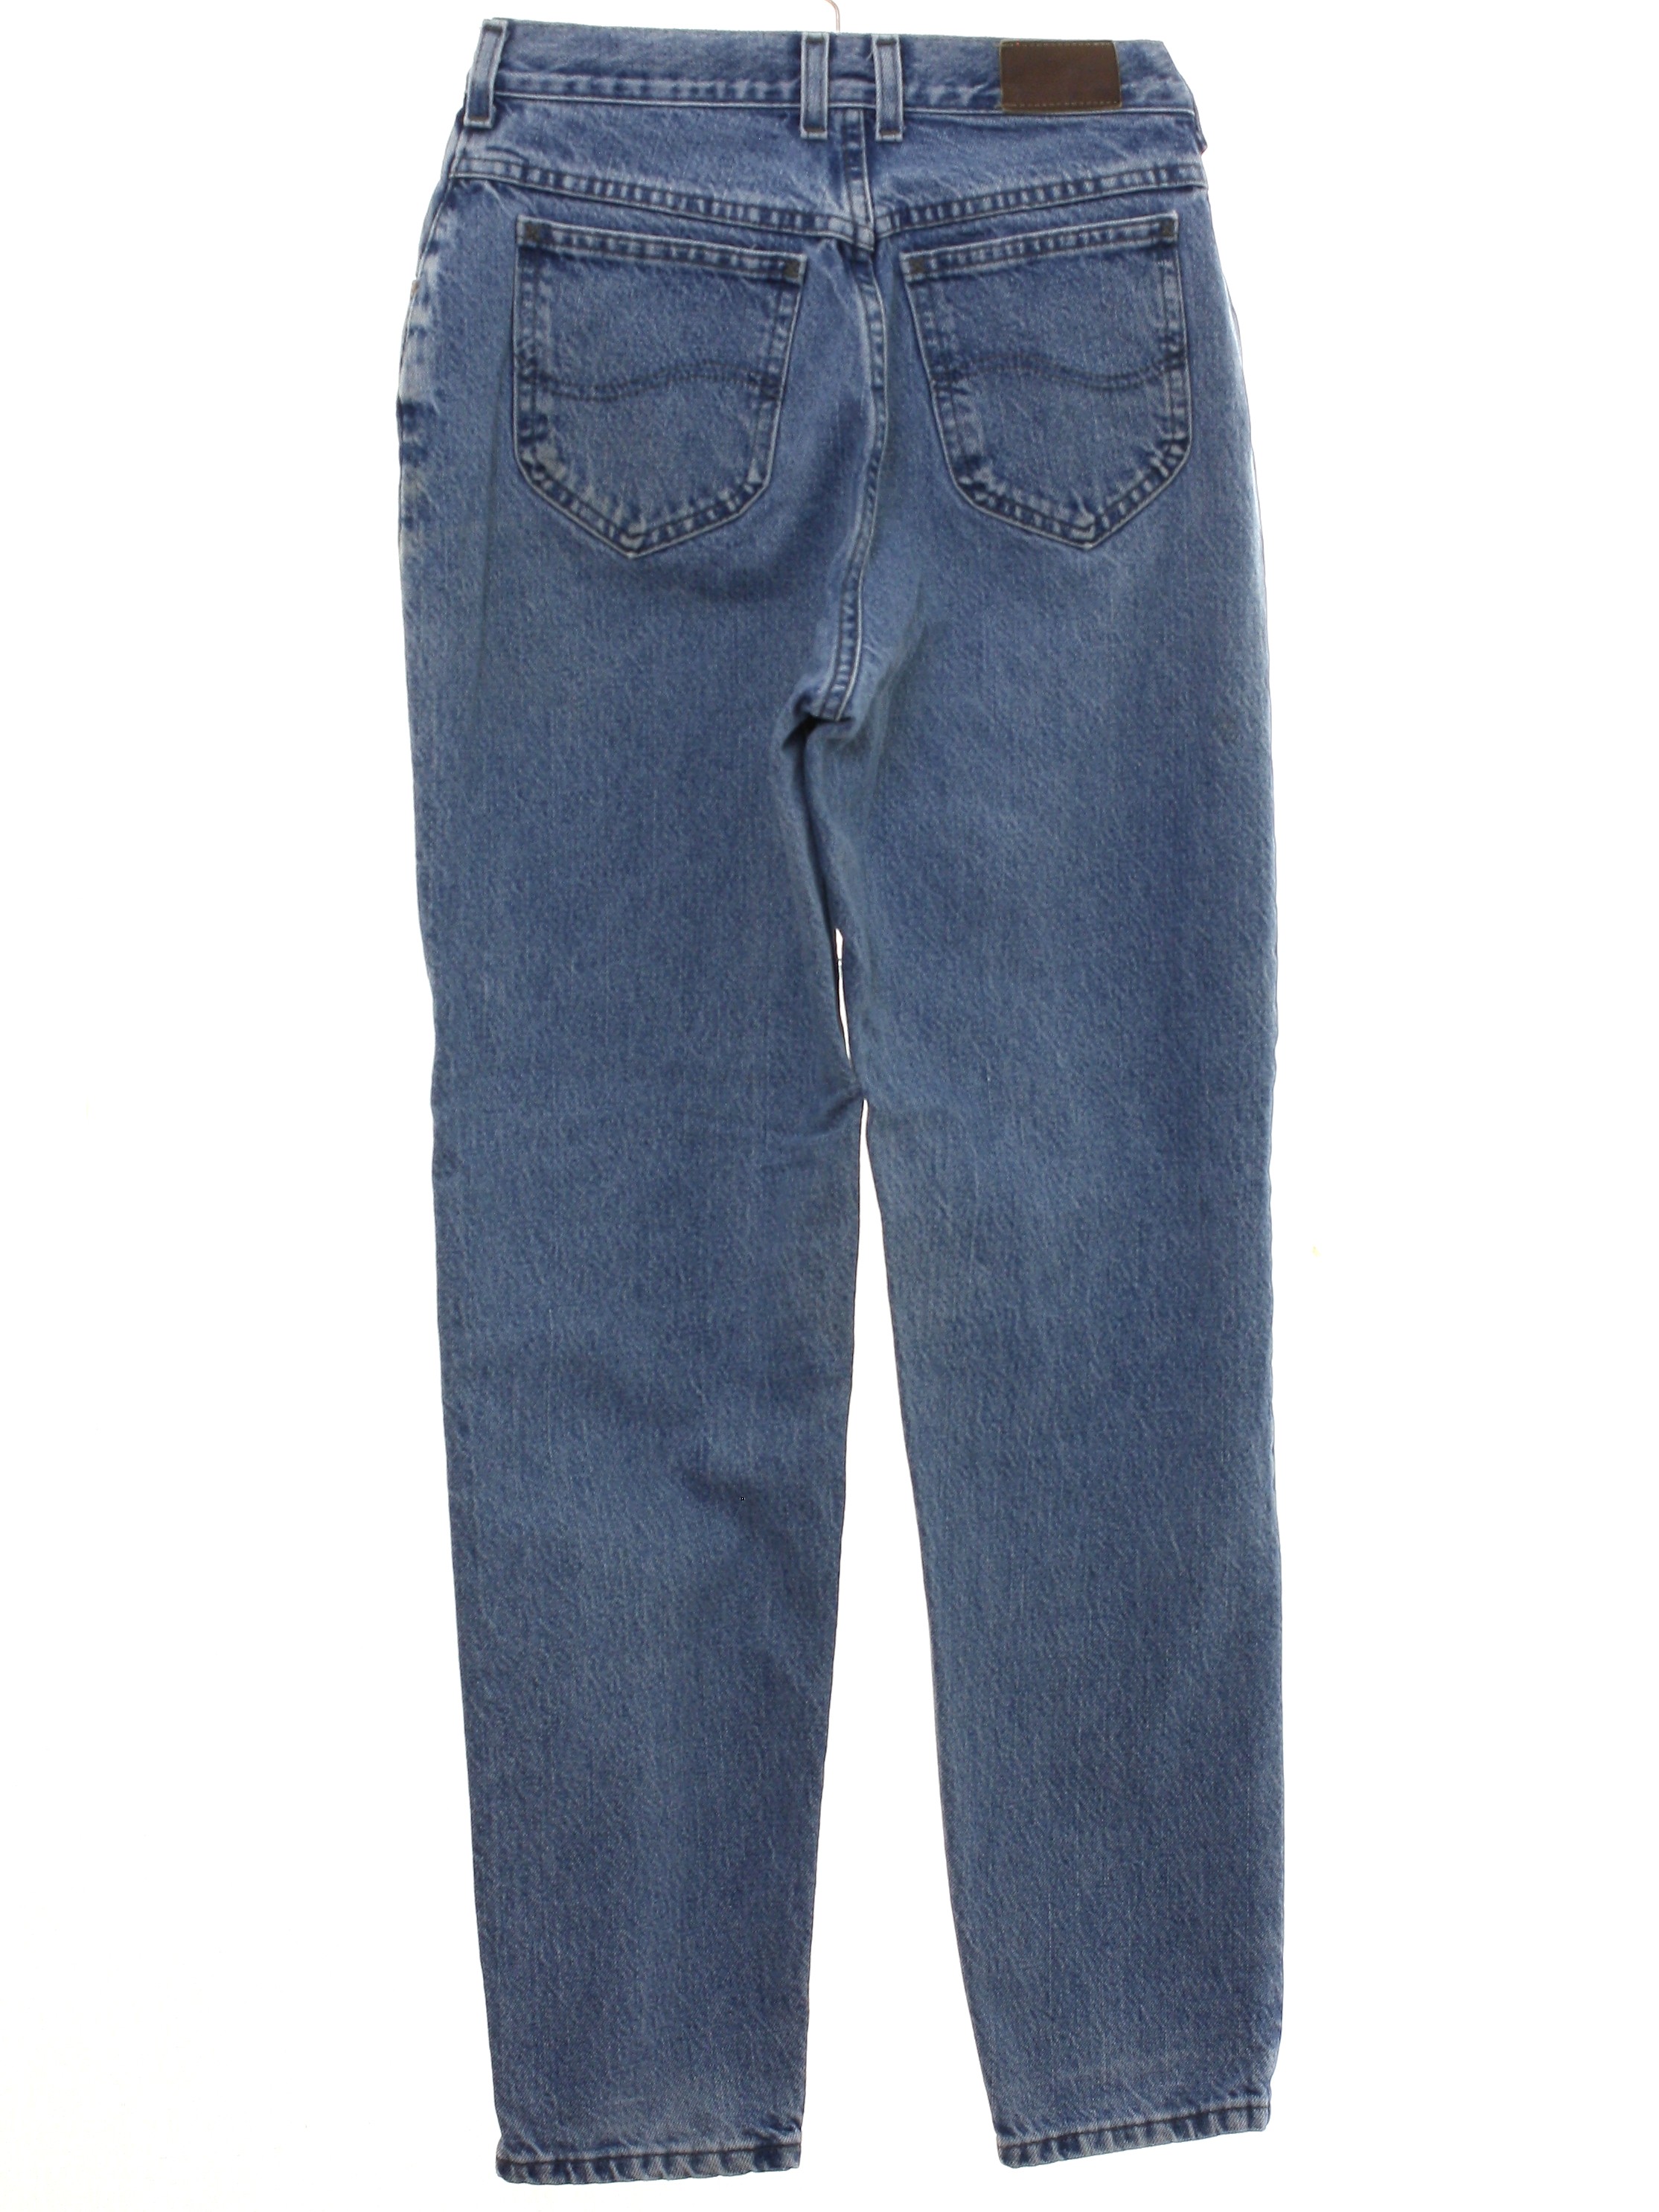 Retro Nineties Pants: 90s -Lee- Womens blue cotton denim denim jeans ...